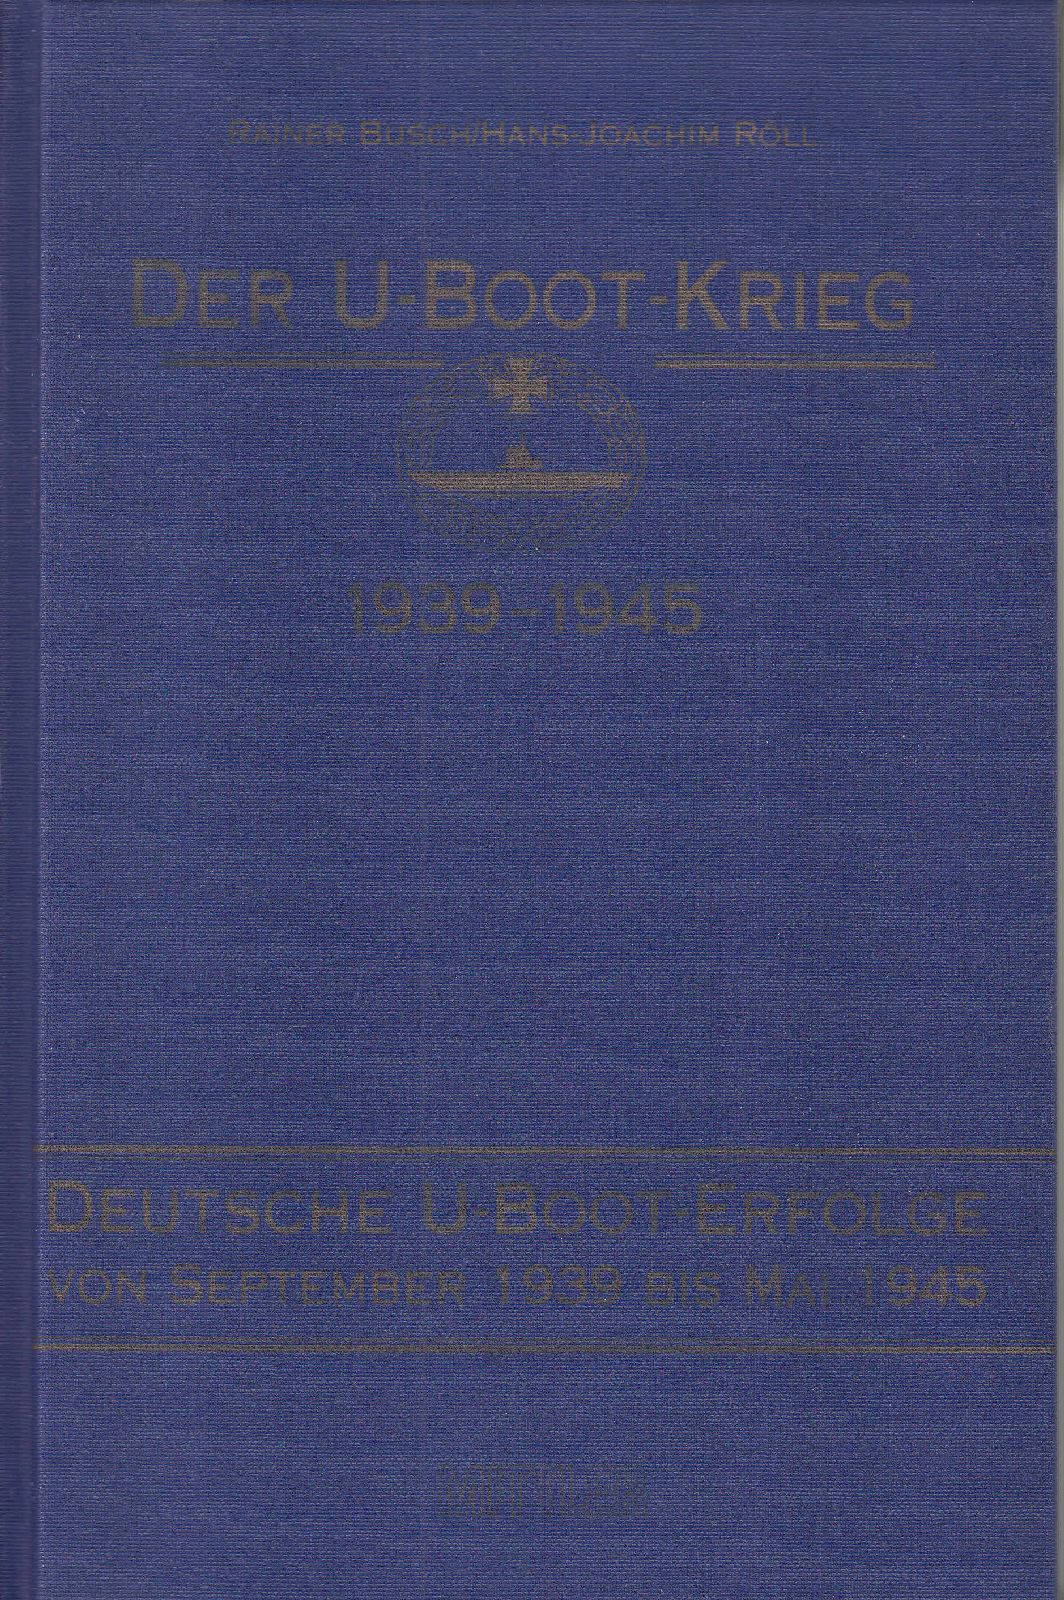 Der U-Boot-Krieg 1939-1945. [Band 3:] Deutsche U-Boot-Erfolge von September 1939 bis Mai 1945. - - Busch, Rainer; Hans-Joachim Röll